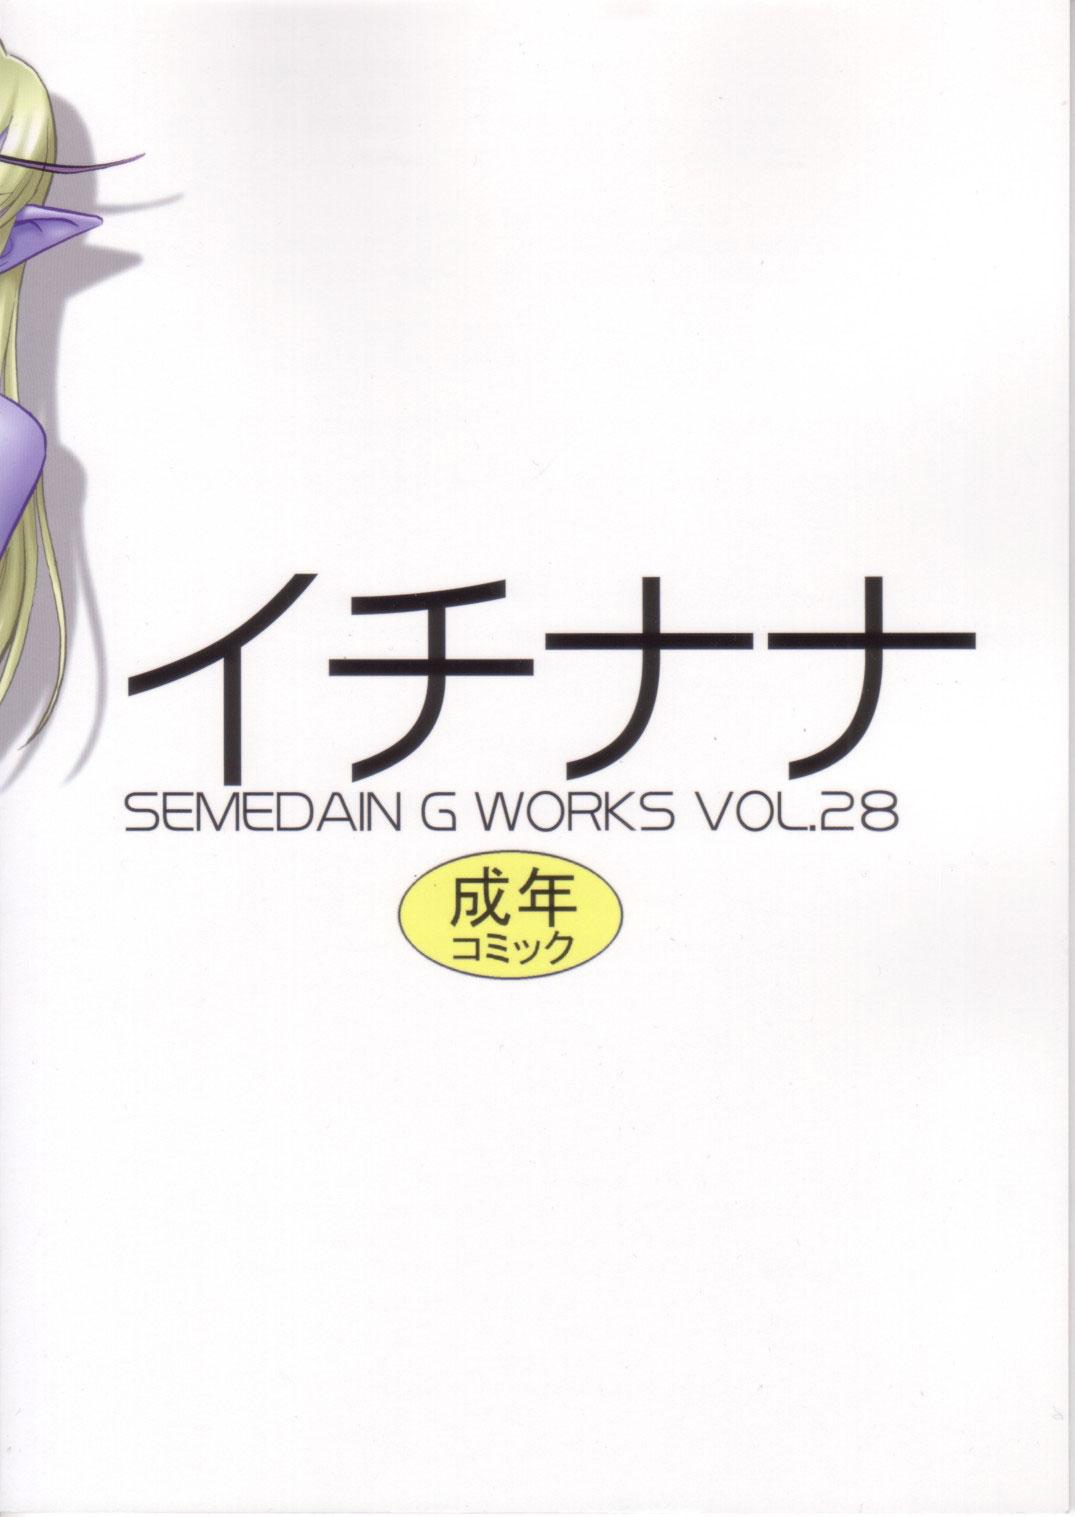 Semedain G Works Vol. 28 - Ichinana 30